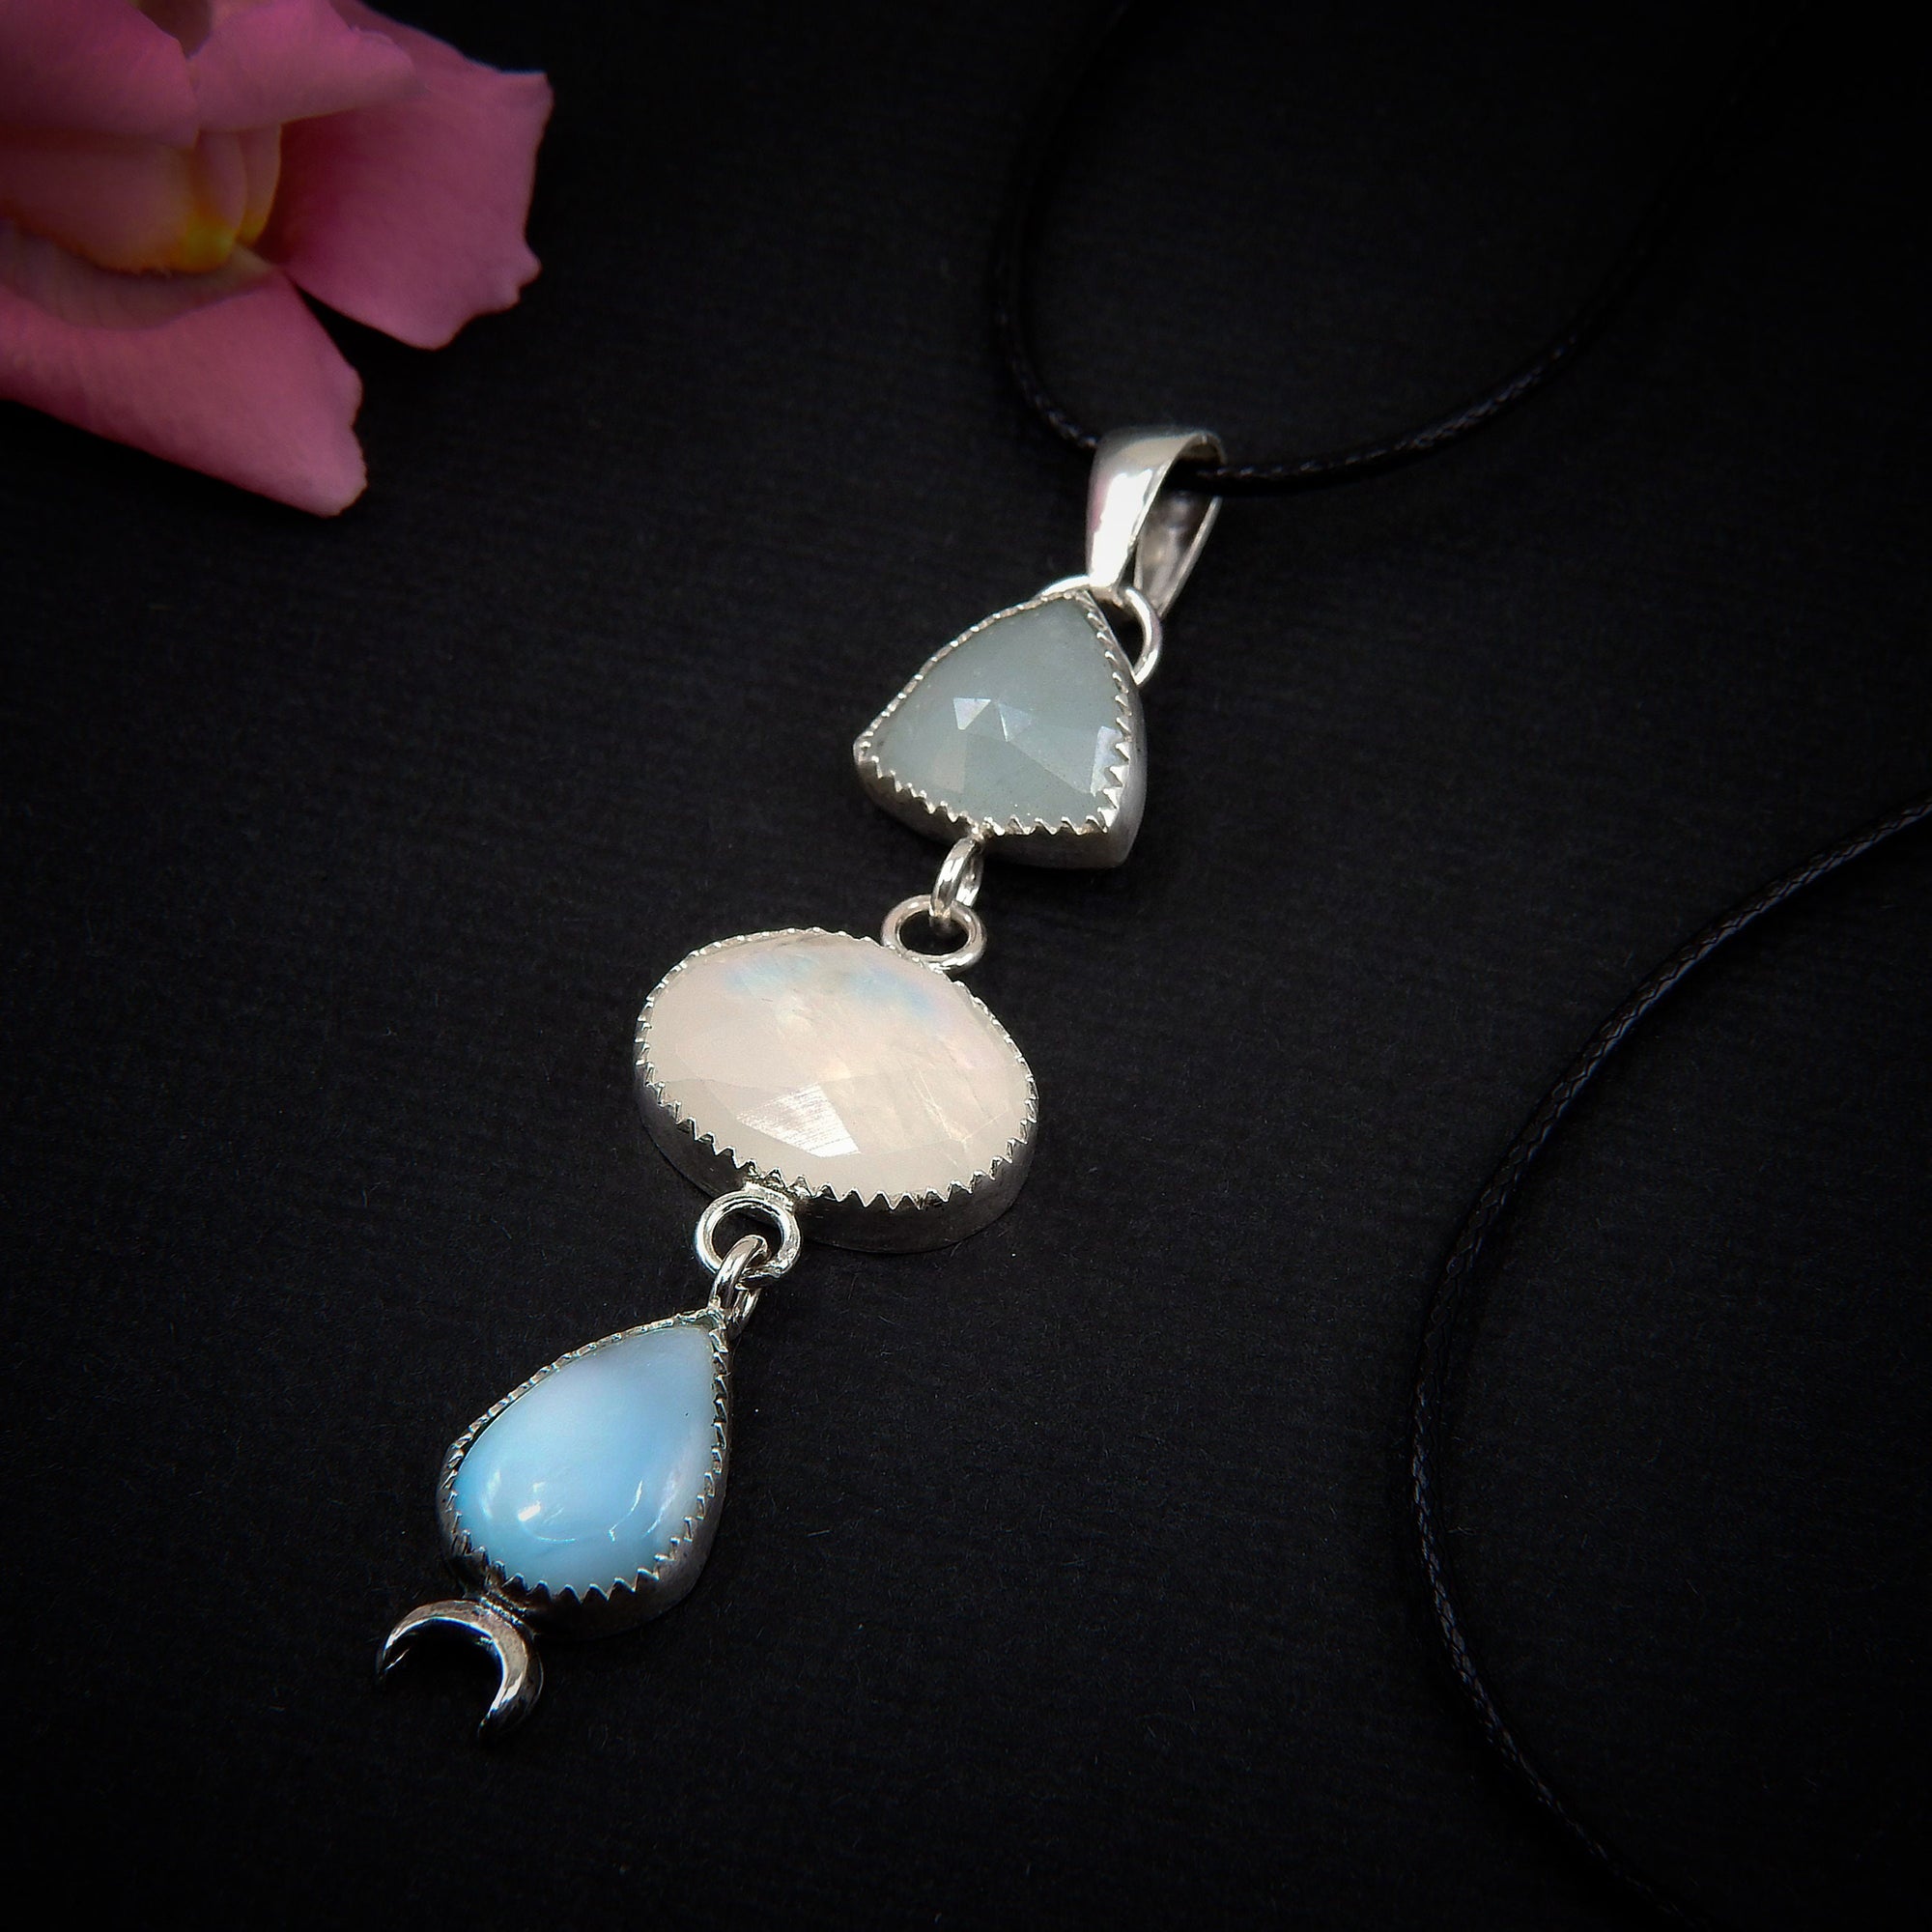 Aquamarine, Moonstone & Larimar Pendant - Sterling Silver - Triple Stone Moon Pendant - Moonstone Pendant - Rose Cut Aquamarine Necklace